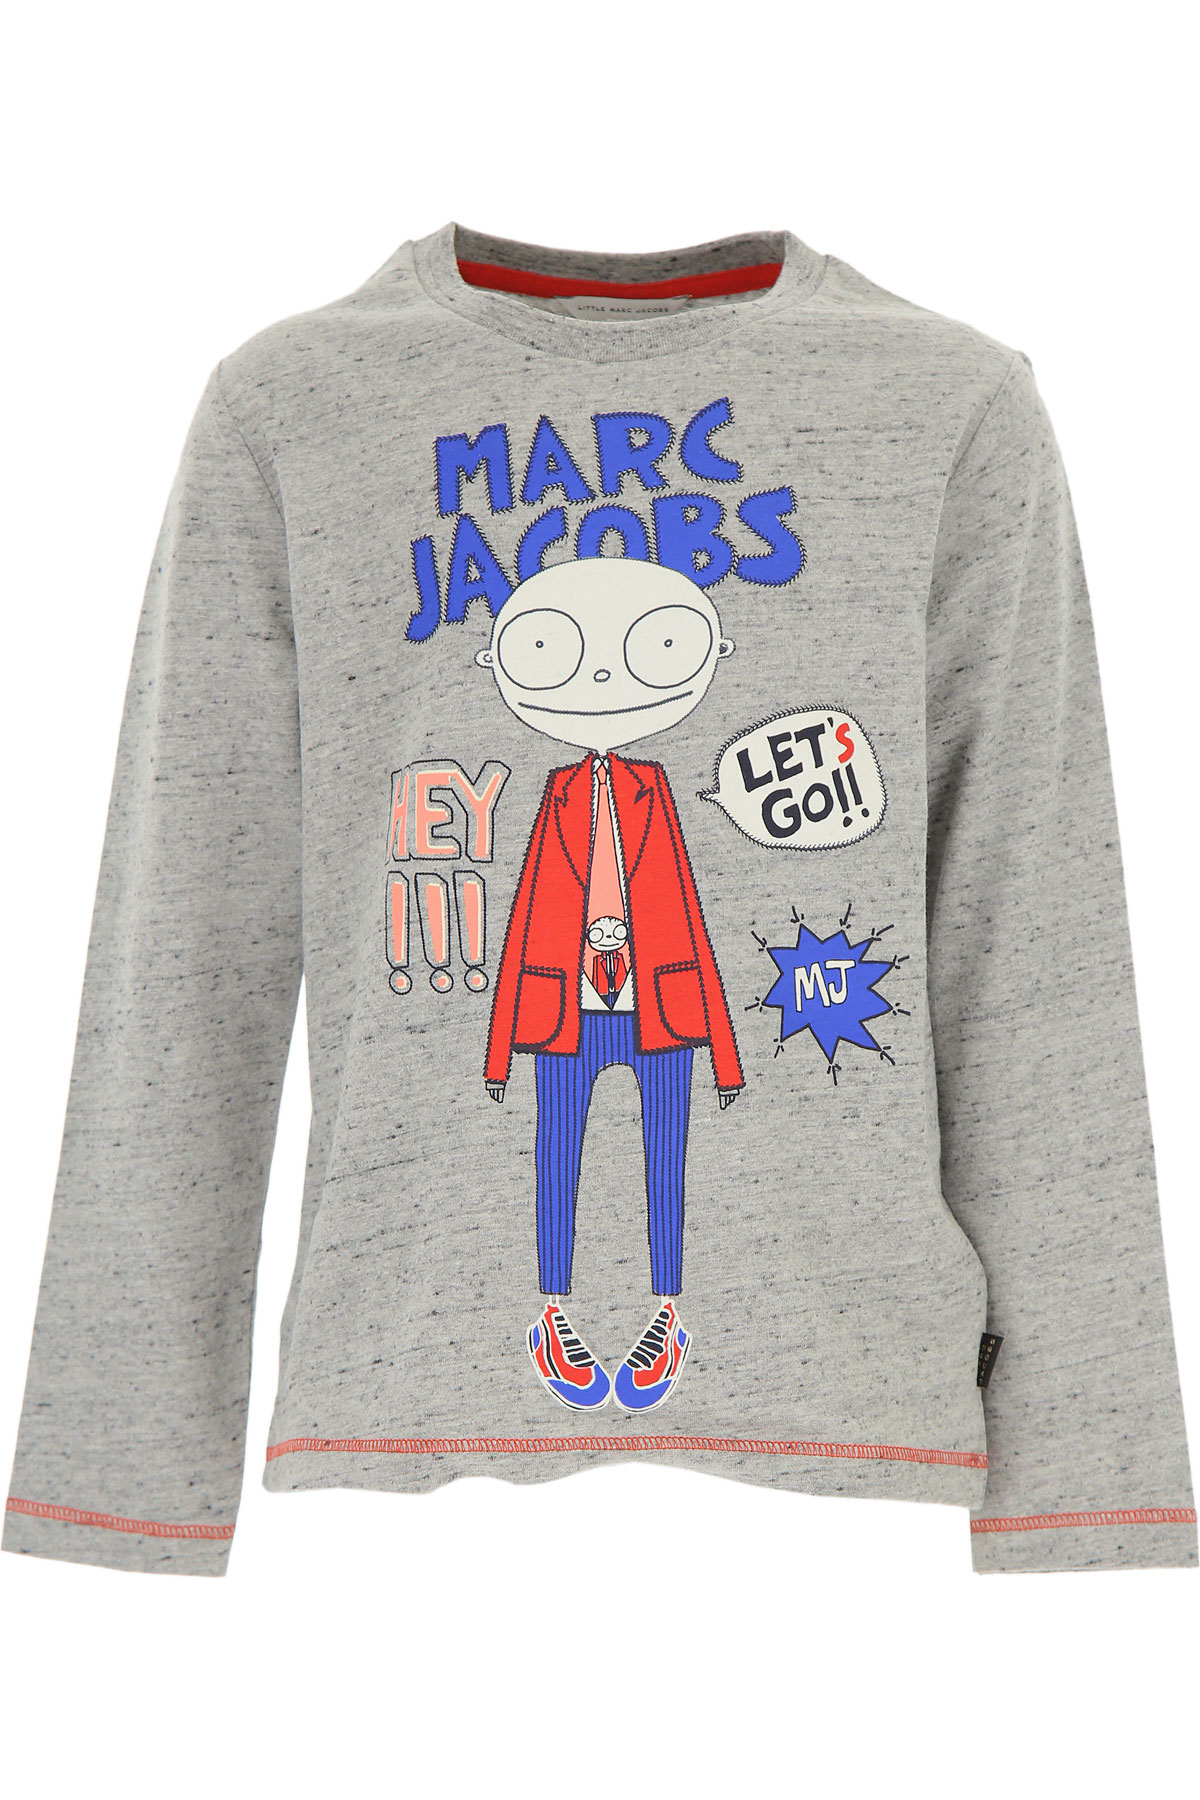 Marc Jacobs Kinder T-Shirt für Jungen Günstig im Sale, Grau, Baumwolle, 2017, 10Y 12Y 14Y 2Y 3Y 4Y 5Y 6Y 8Y